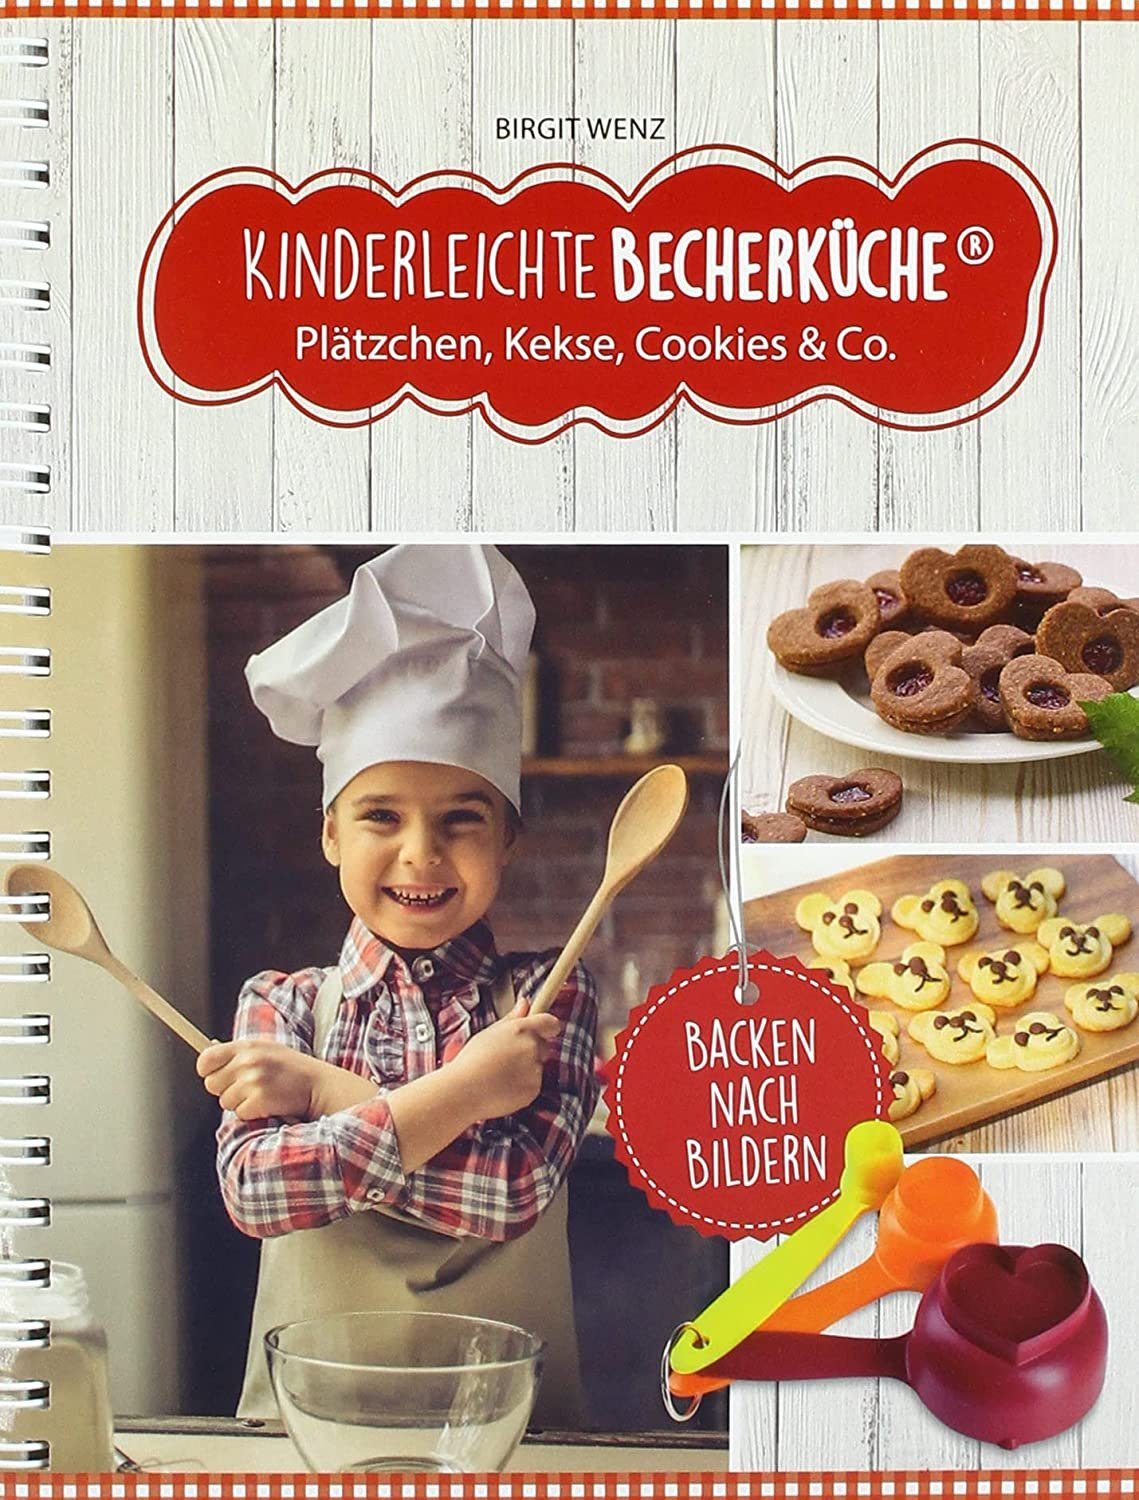 Plätzchen Kekse Co., Kinderleichte Notizbuch & Becherküche Rezeptbuch, Cookies Backbuch